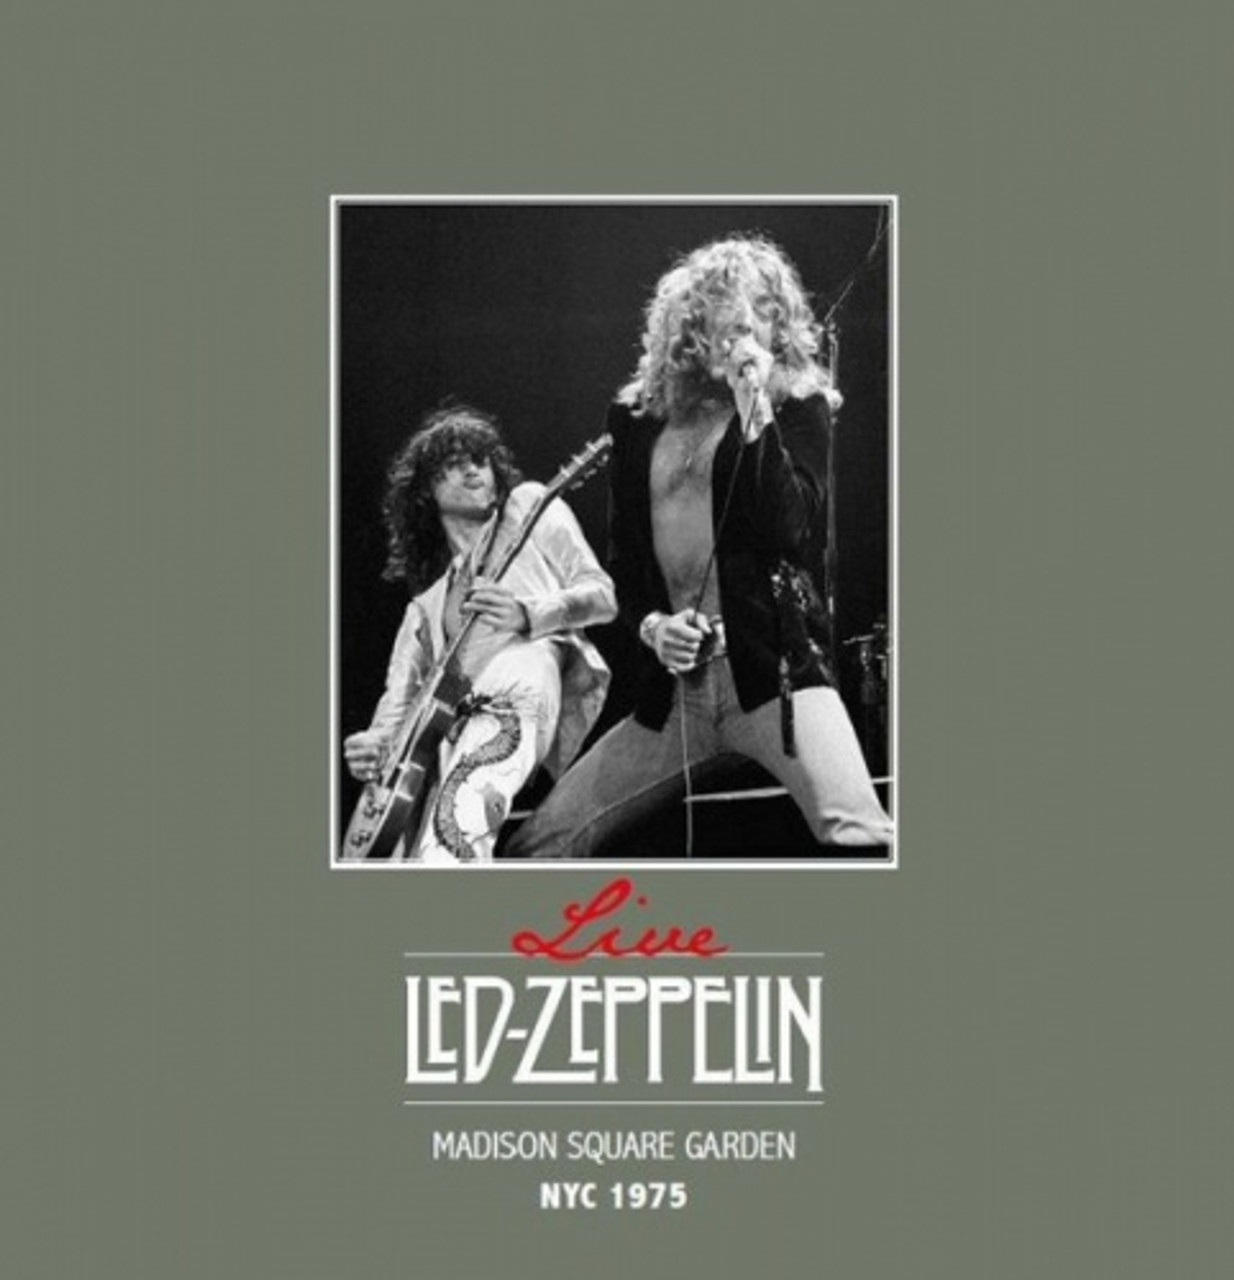 Madison Square Garden - Led Zeppelin